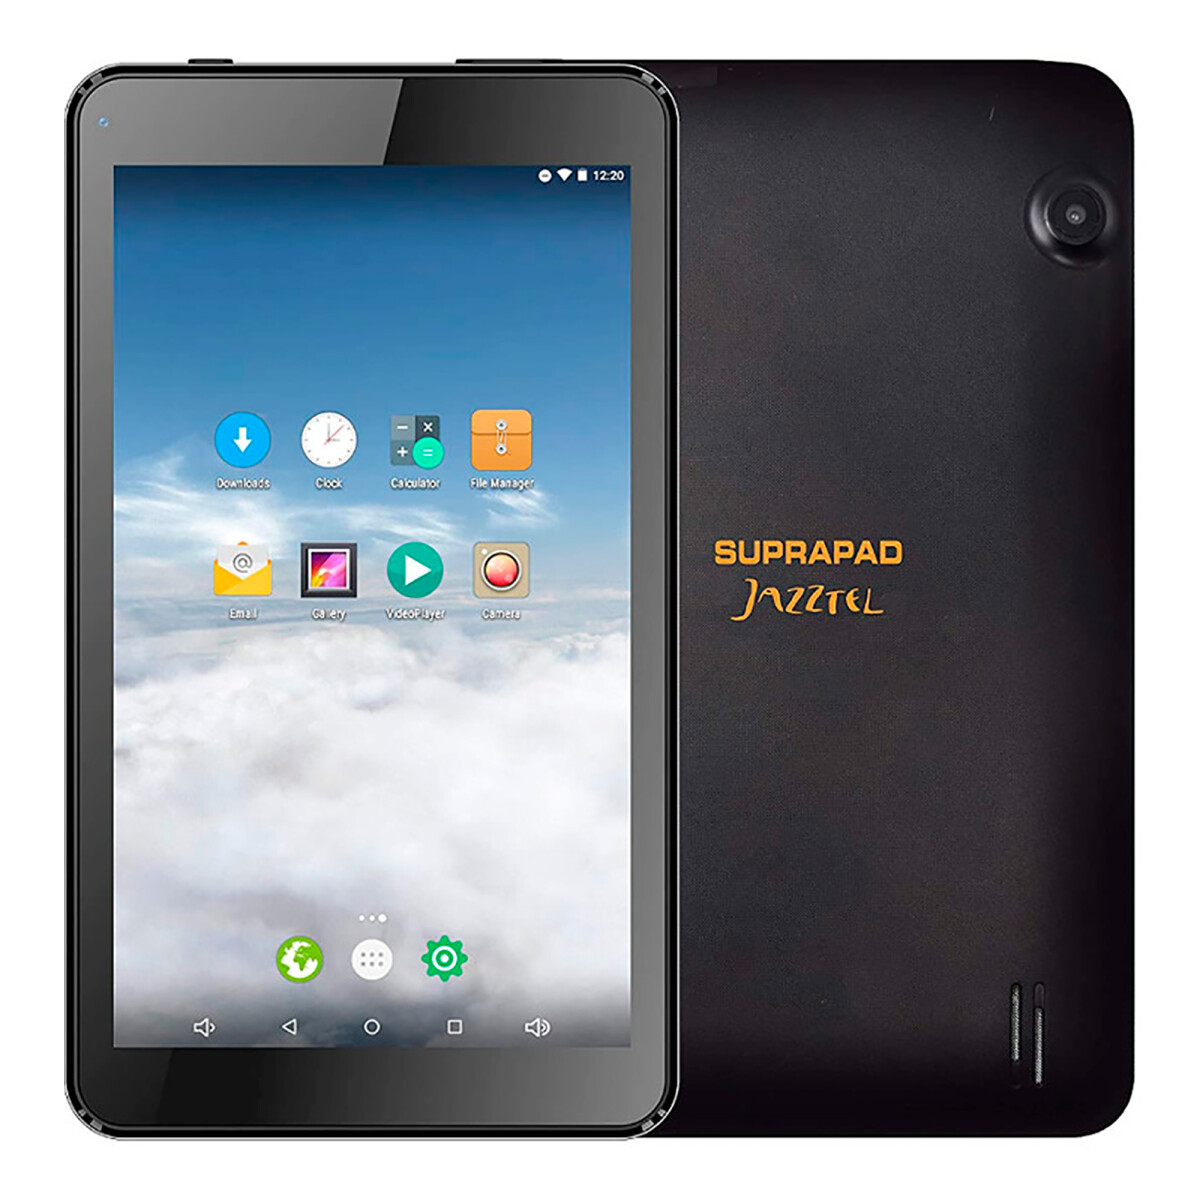 Iview - Tablet Suprapad Jazztel 7" Multitáctil Capacitiva. Quad Core. Android. Ram 1GB / Rom 8GB. 2M - 001 